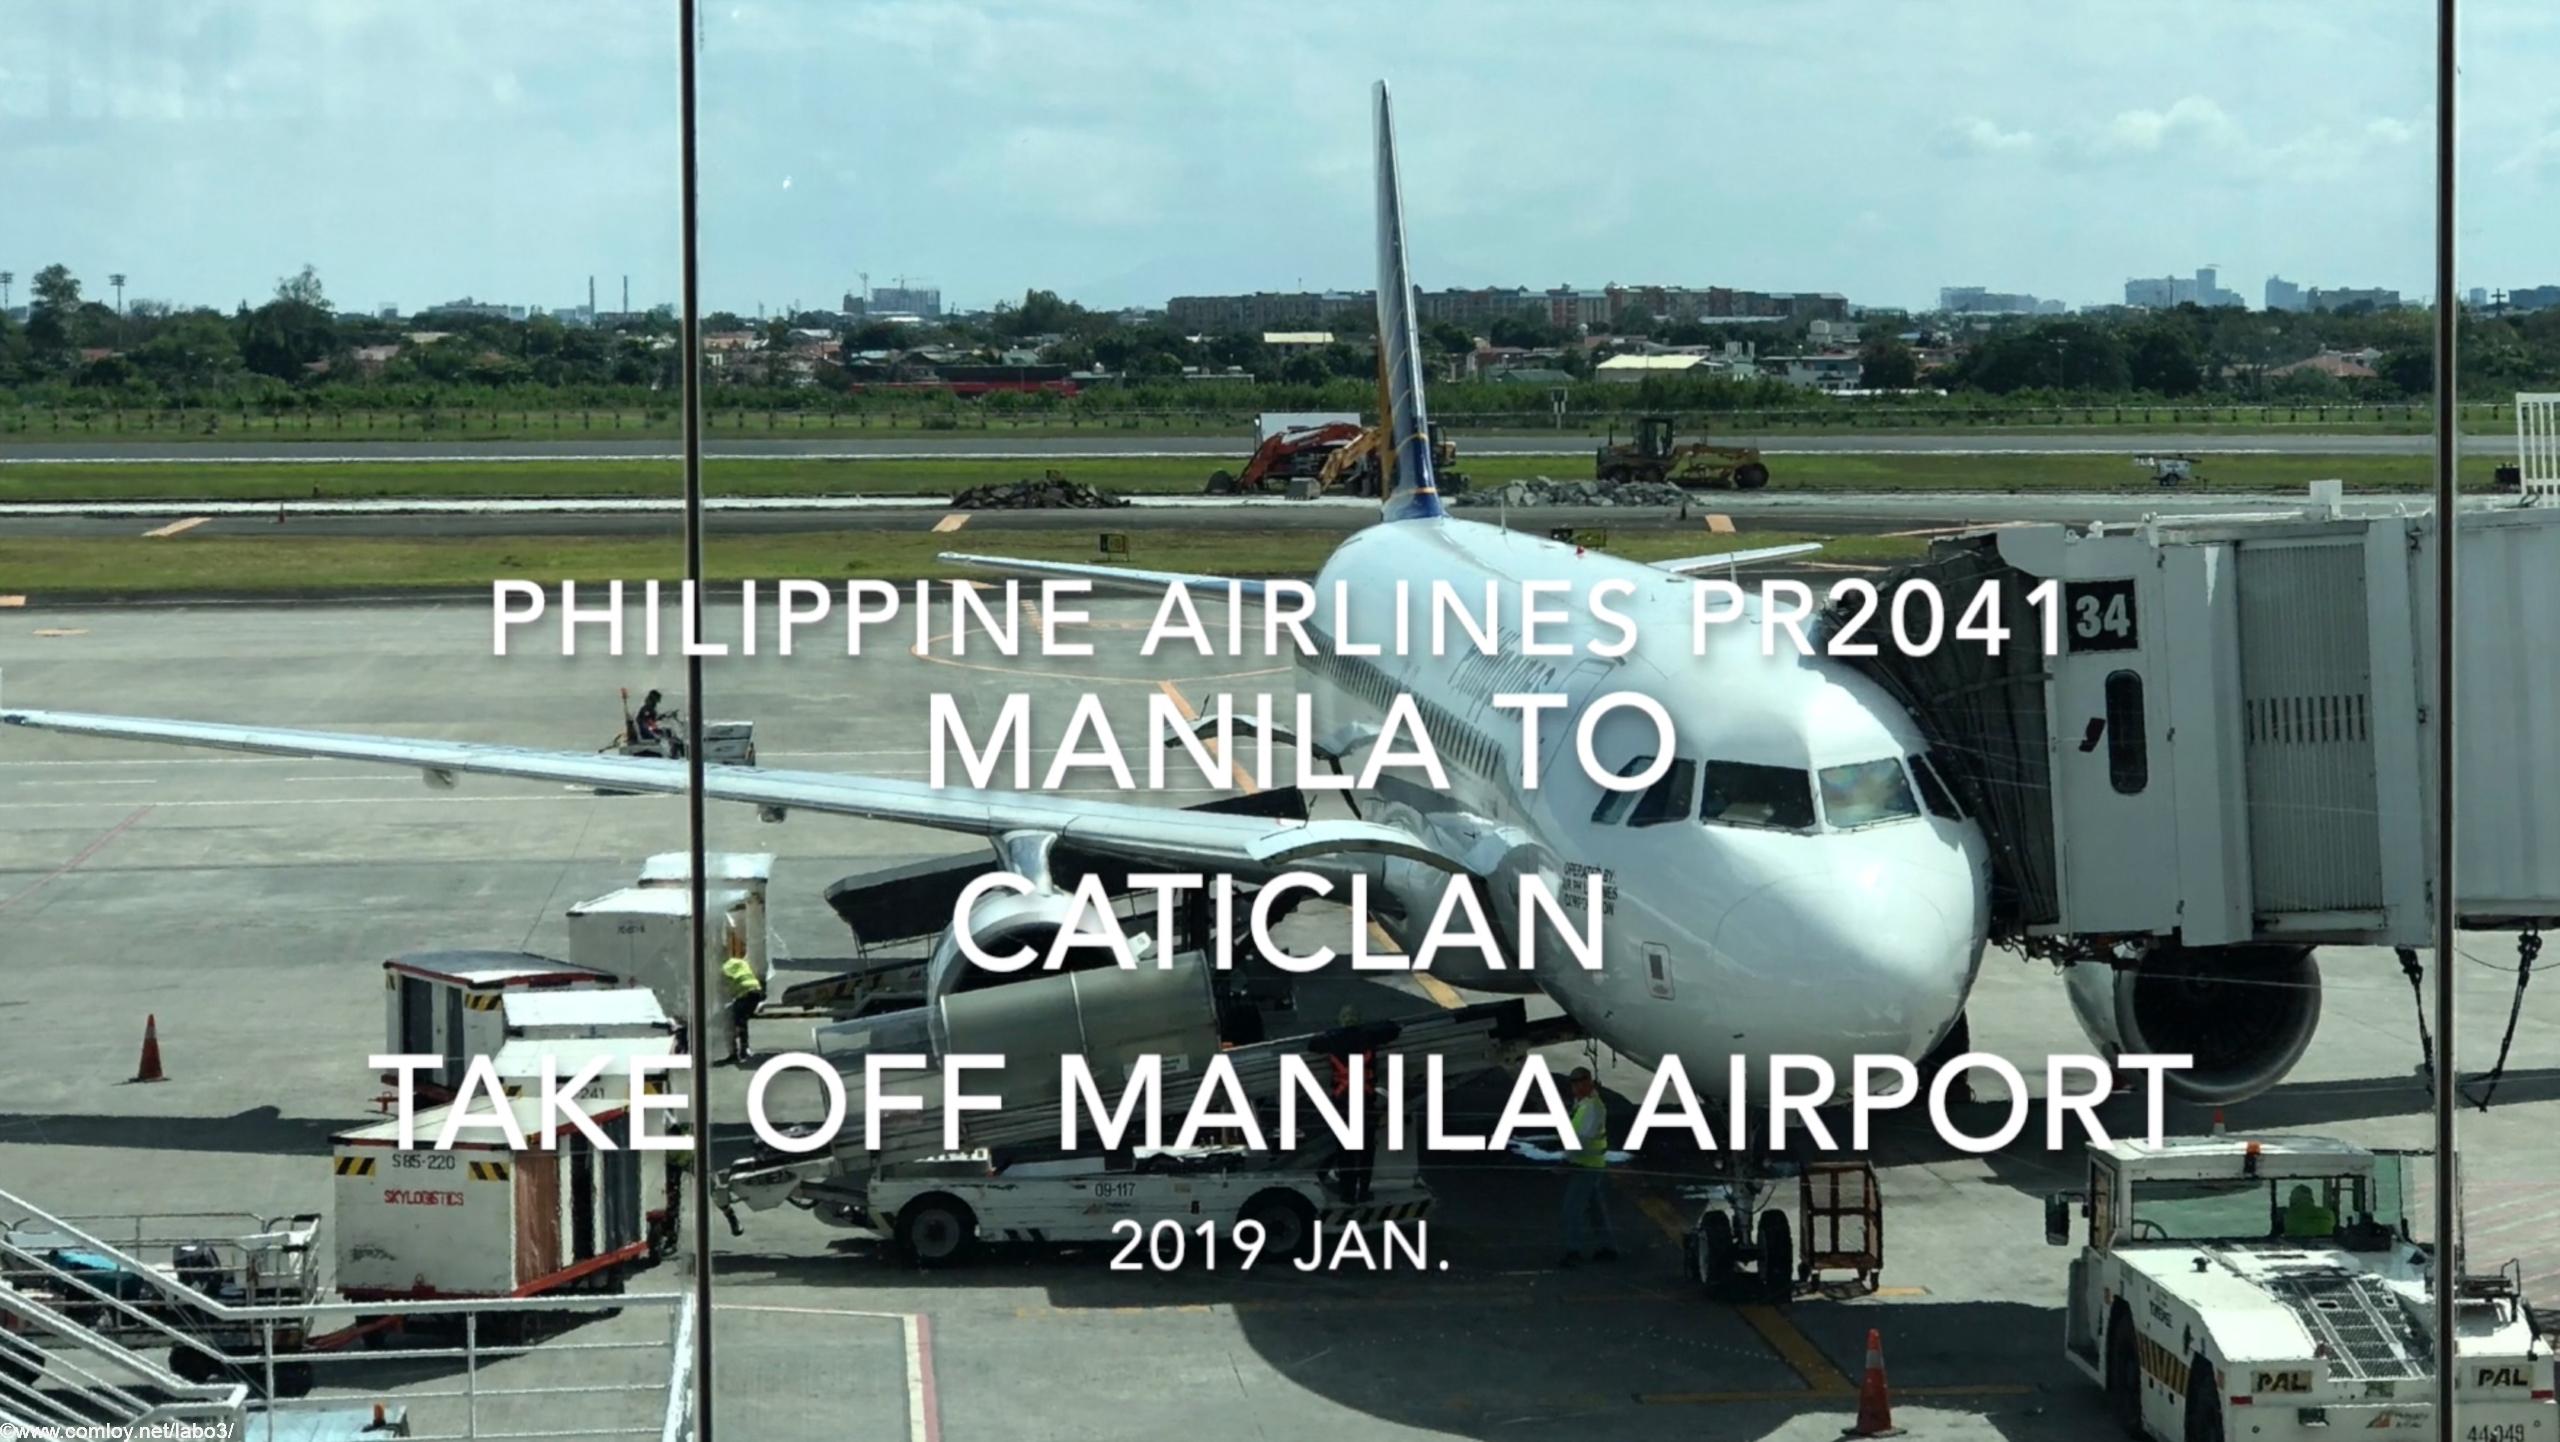 【機内から離着陸映像】2019 Jan. Philippine Airlines PR2041 MANILA to Caticlan Take off MANILA Airport フィリピン航空 マニラ - カティクラン マニラ空港離陸